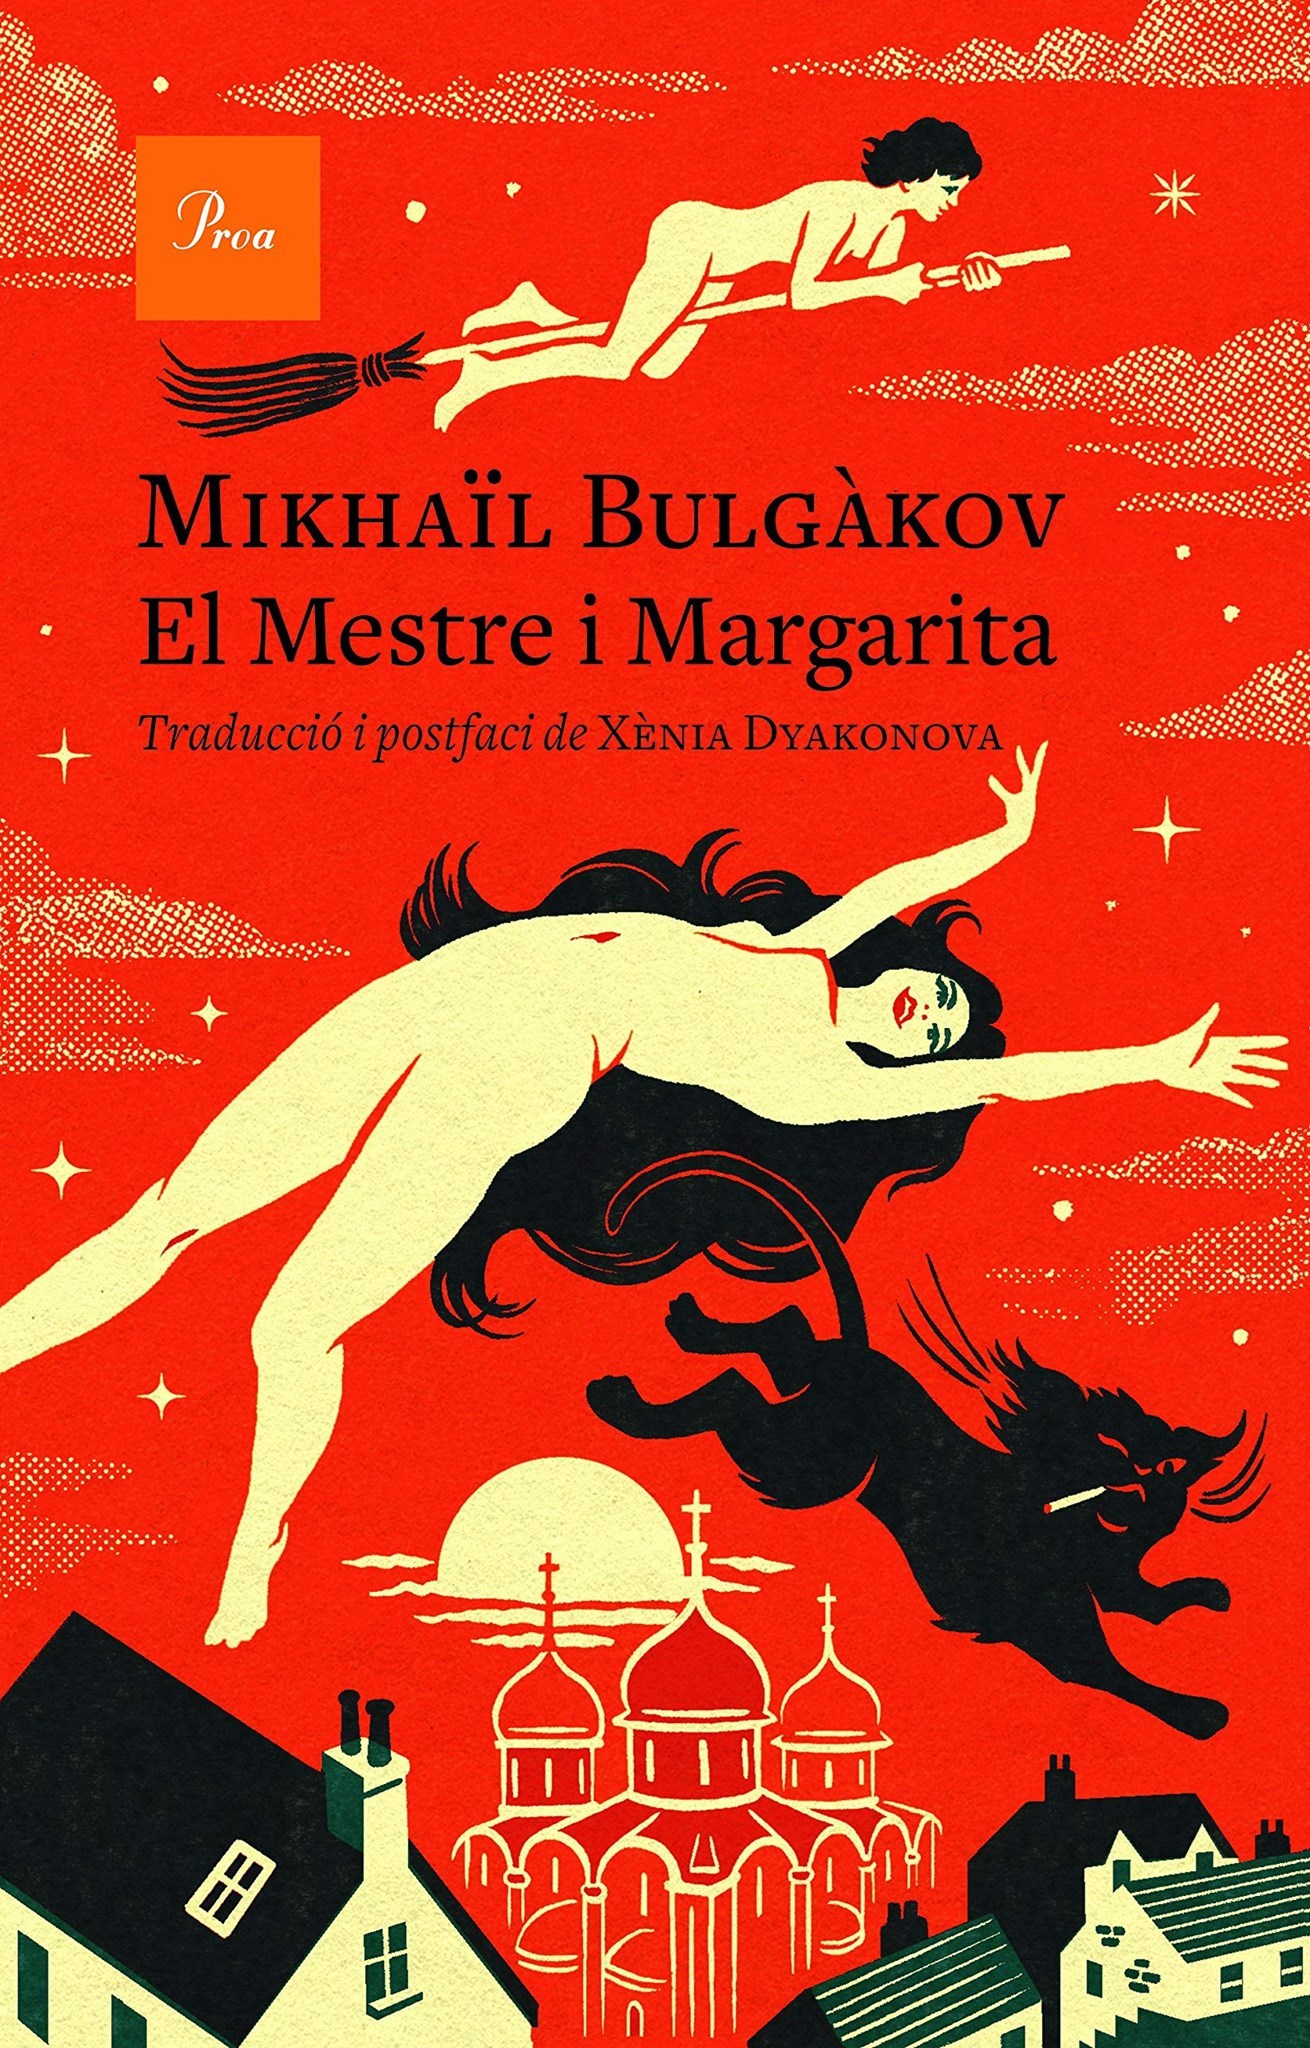  El Mestre i Margarita, de Mikhaïl Bulgàkov (Proa)